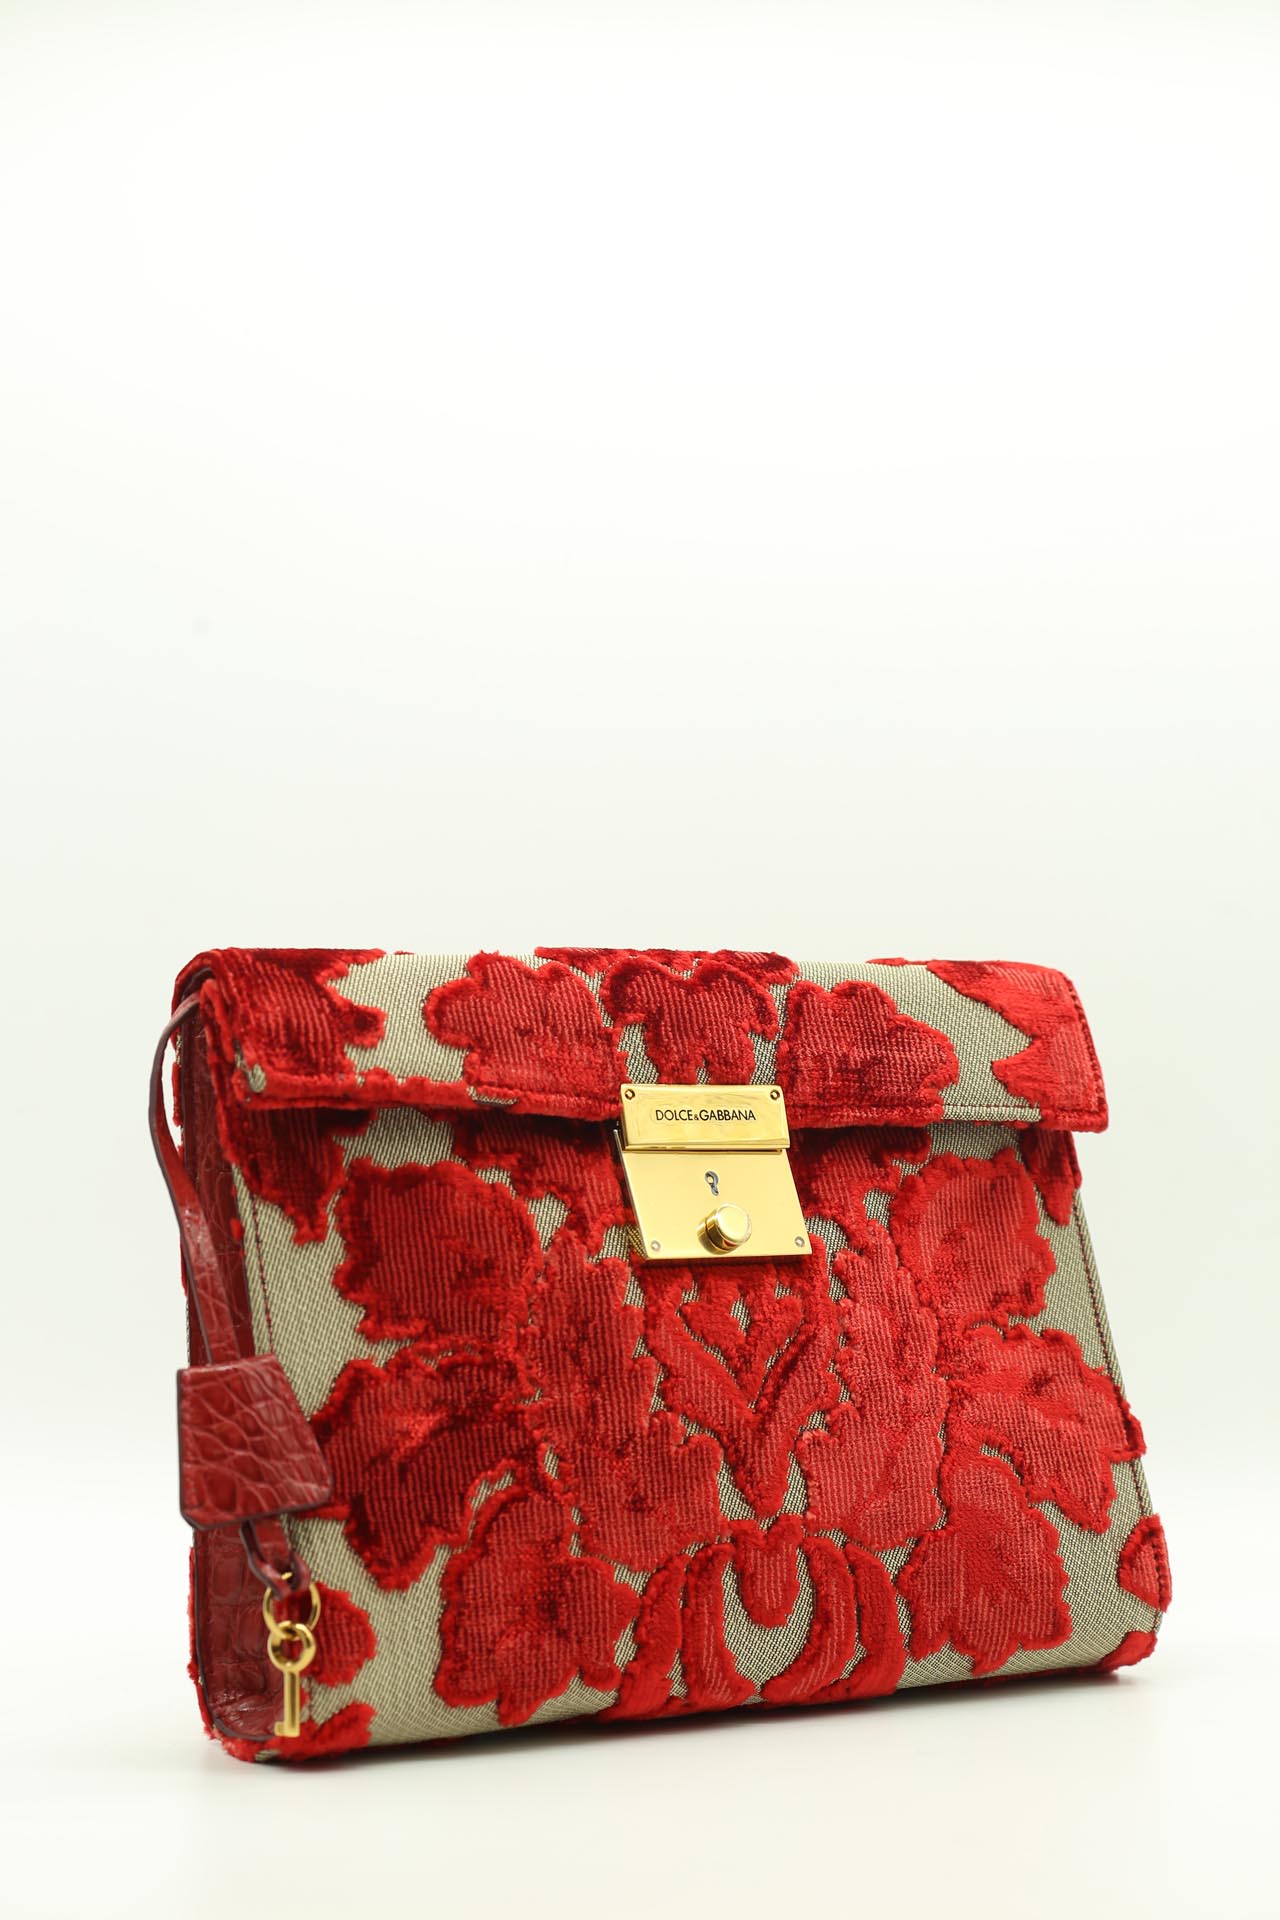 Dolce & Gabbana, Handbag